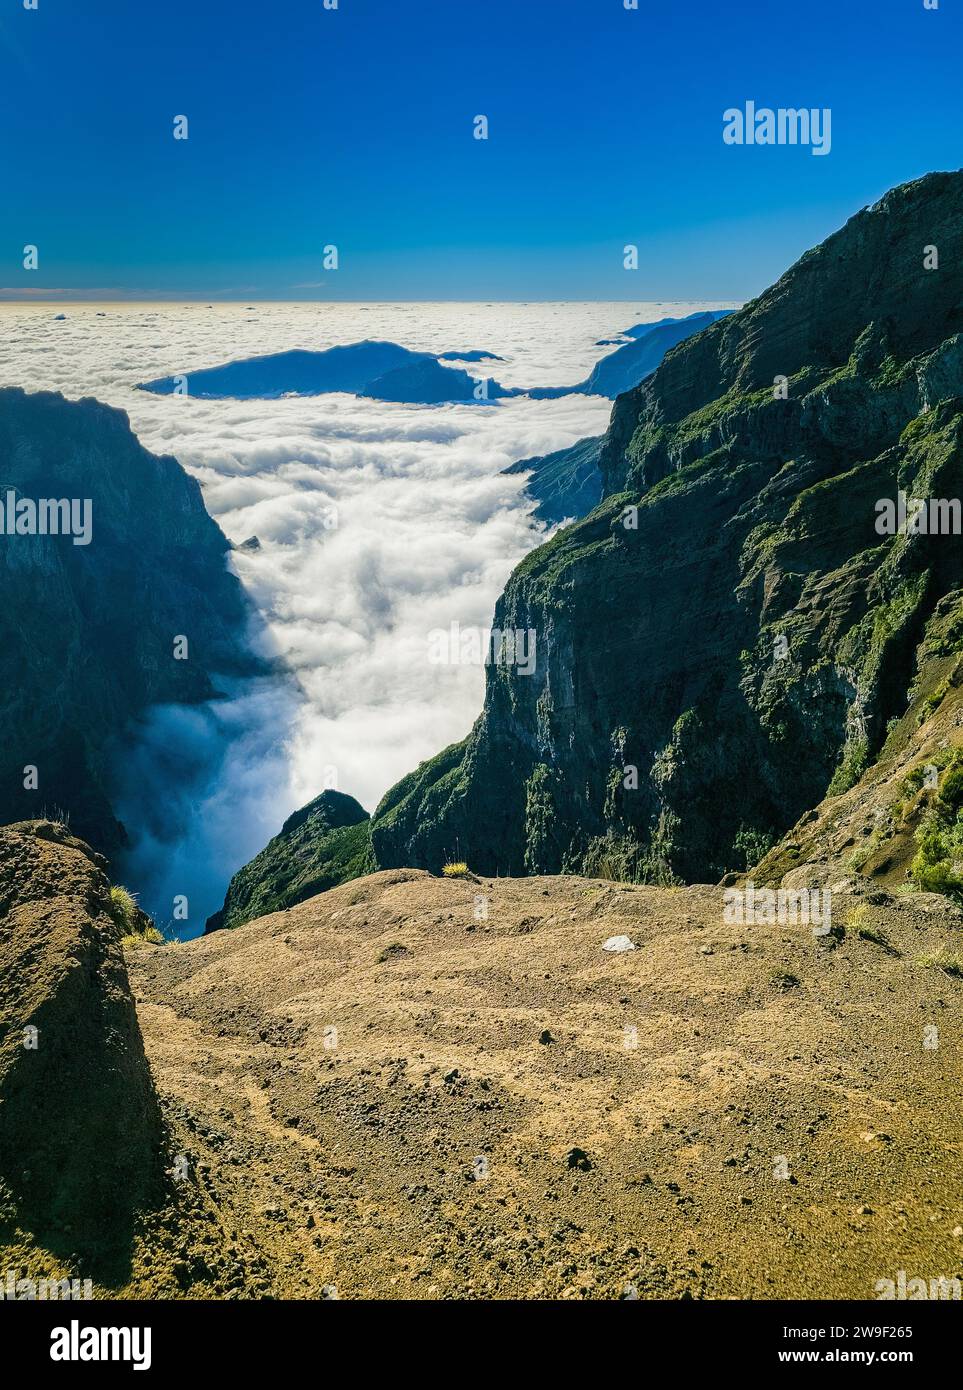 Eine majestätische Landschaft mit einer hohen Klippe mit einem kleinen weißen Punkt im Vordergrund, der sich über einem Nebelmeer erhebt Stockfoto